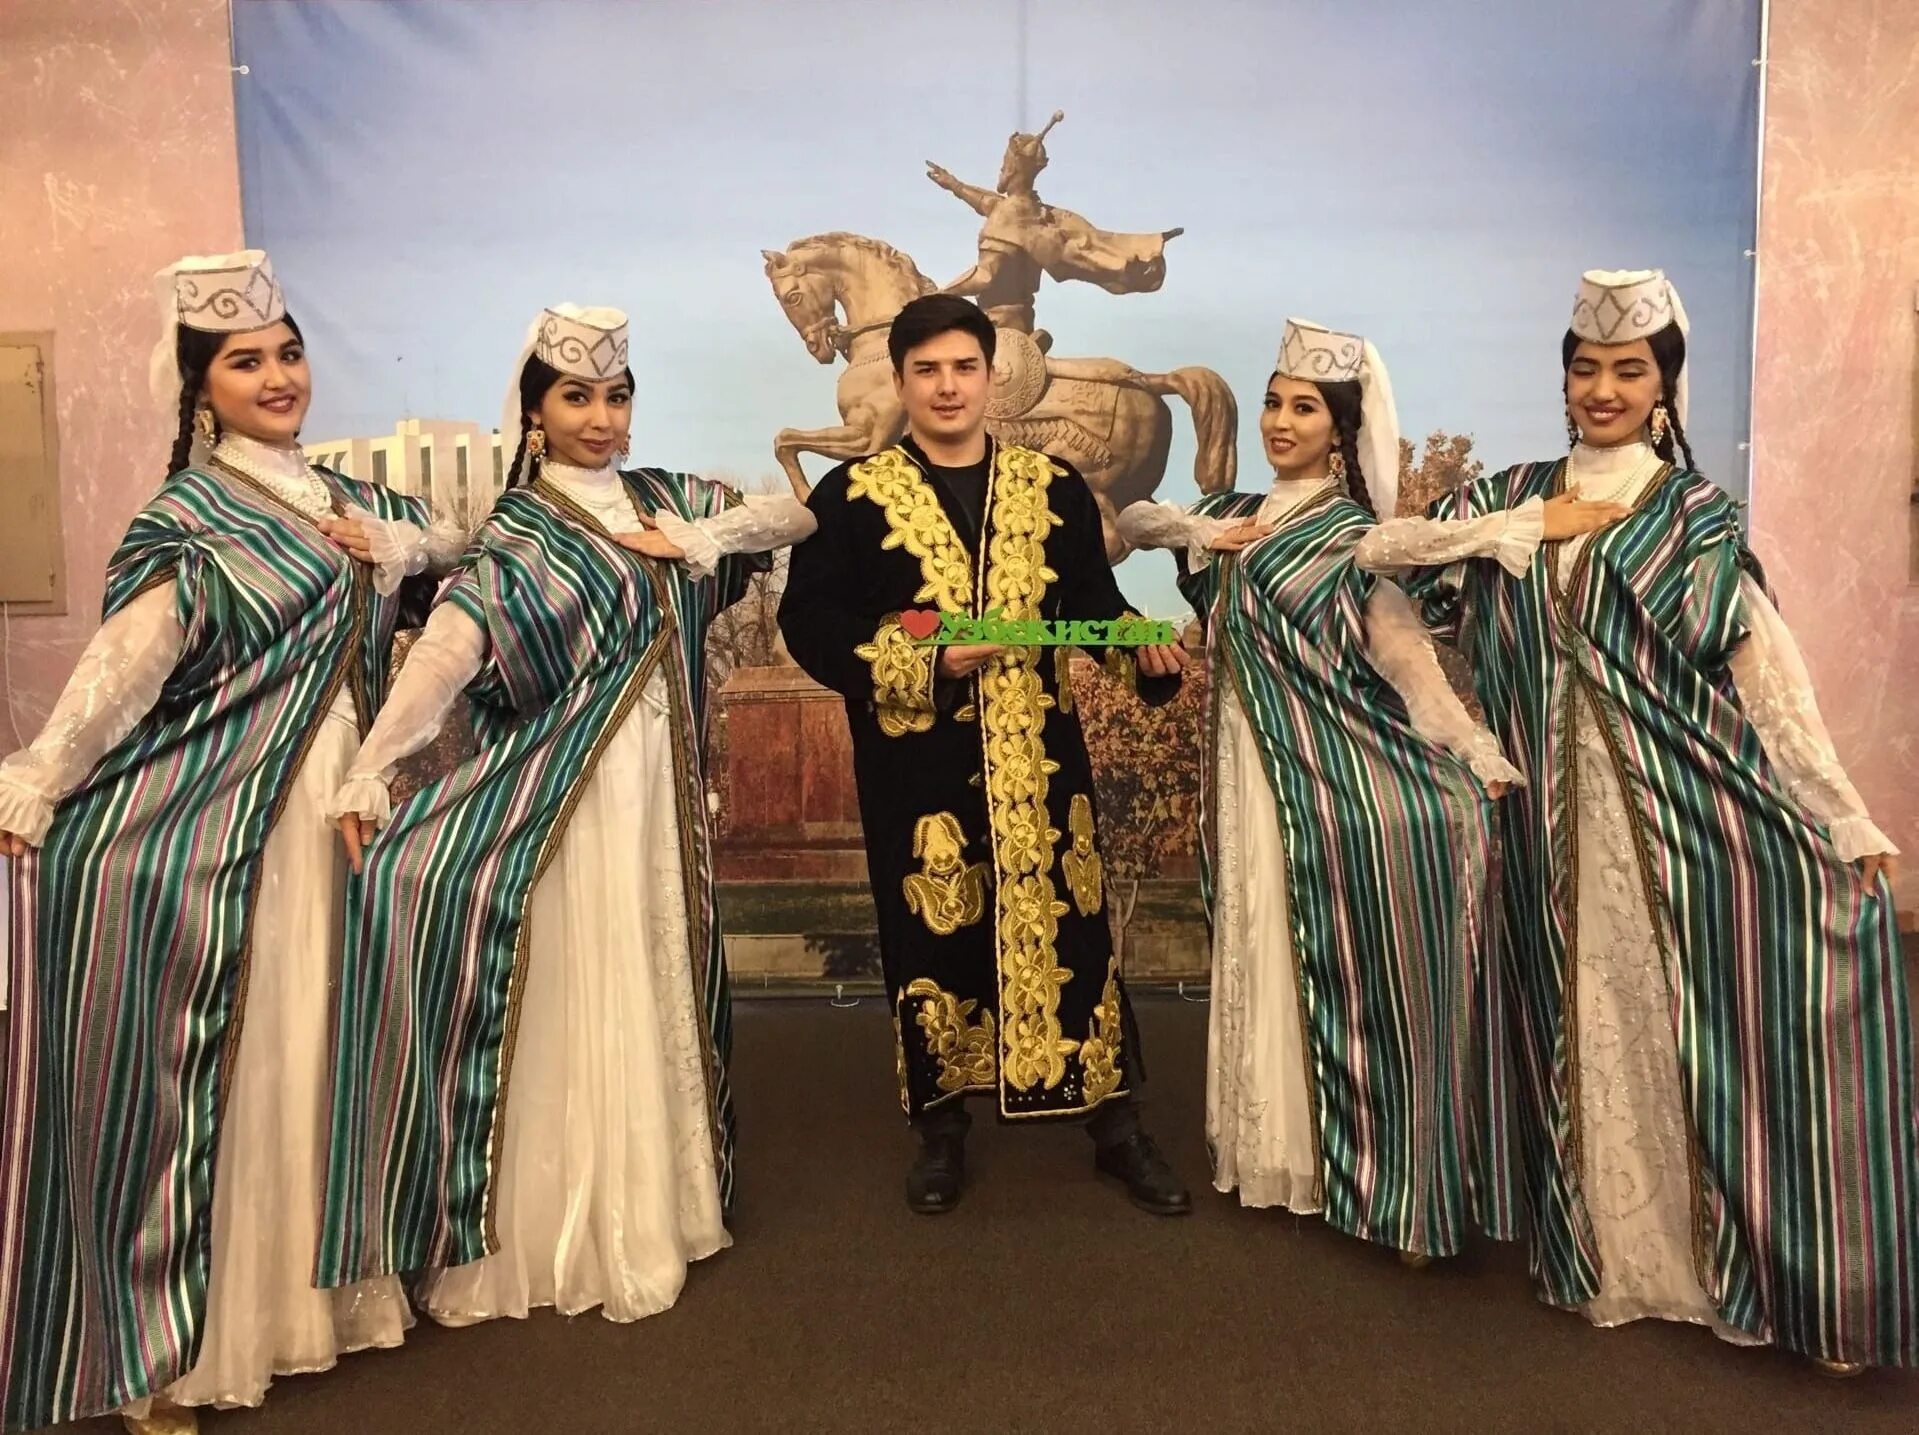 Узбекская семья. Узбекские студенты. Студент фото узбек. Дни культуры Узбекистана в России.